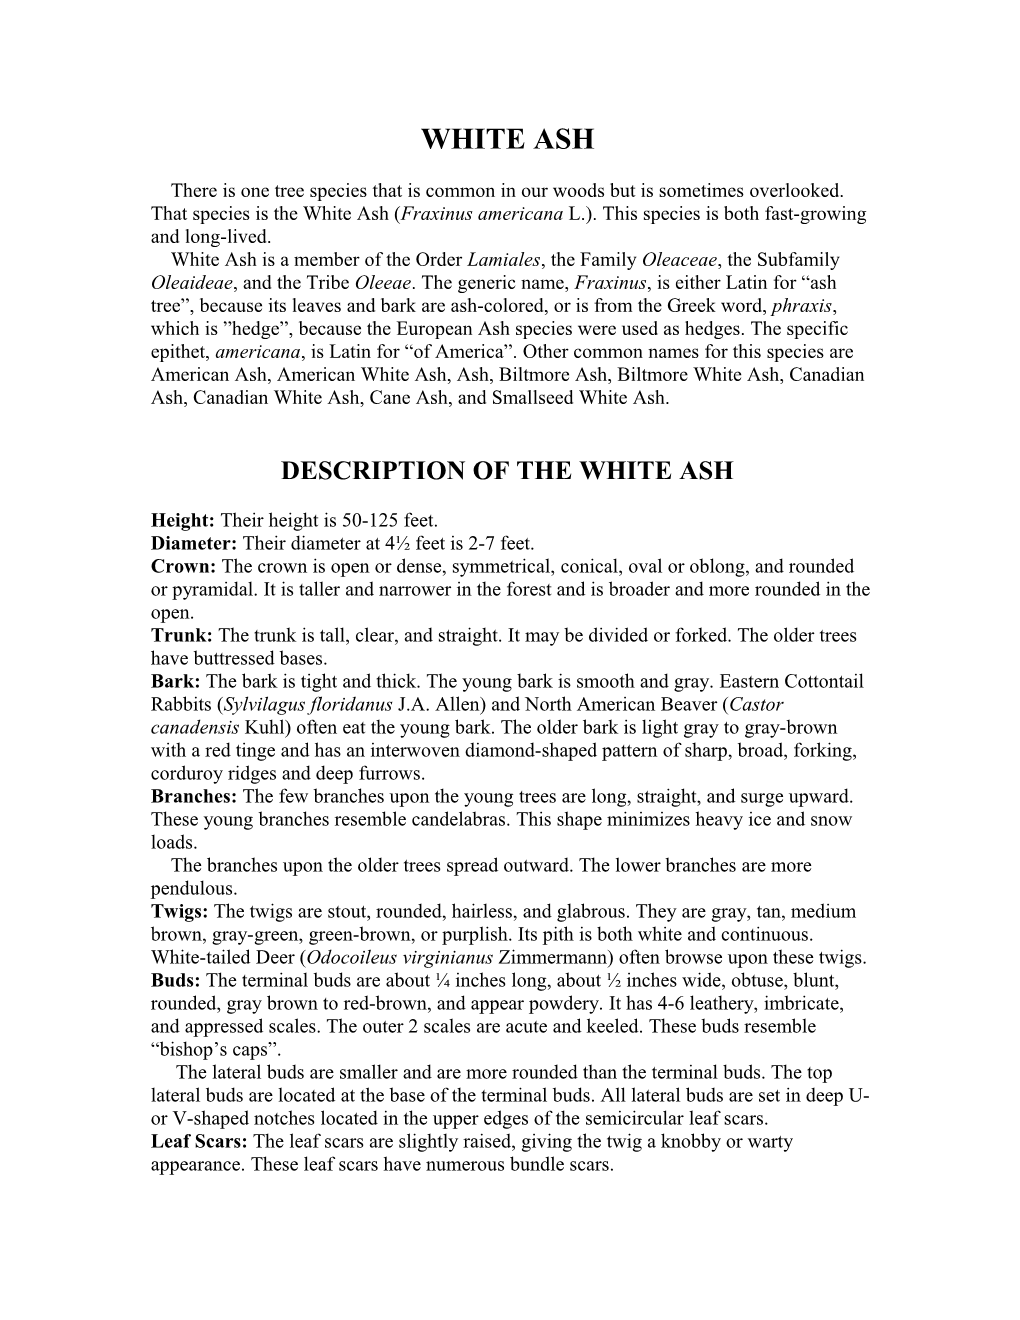 Description of the White Ash